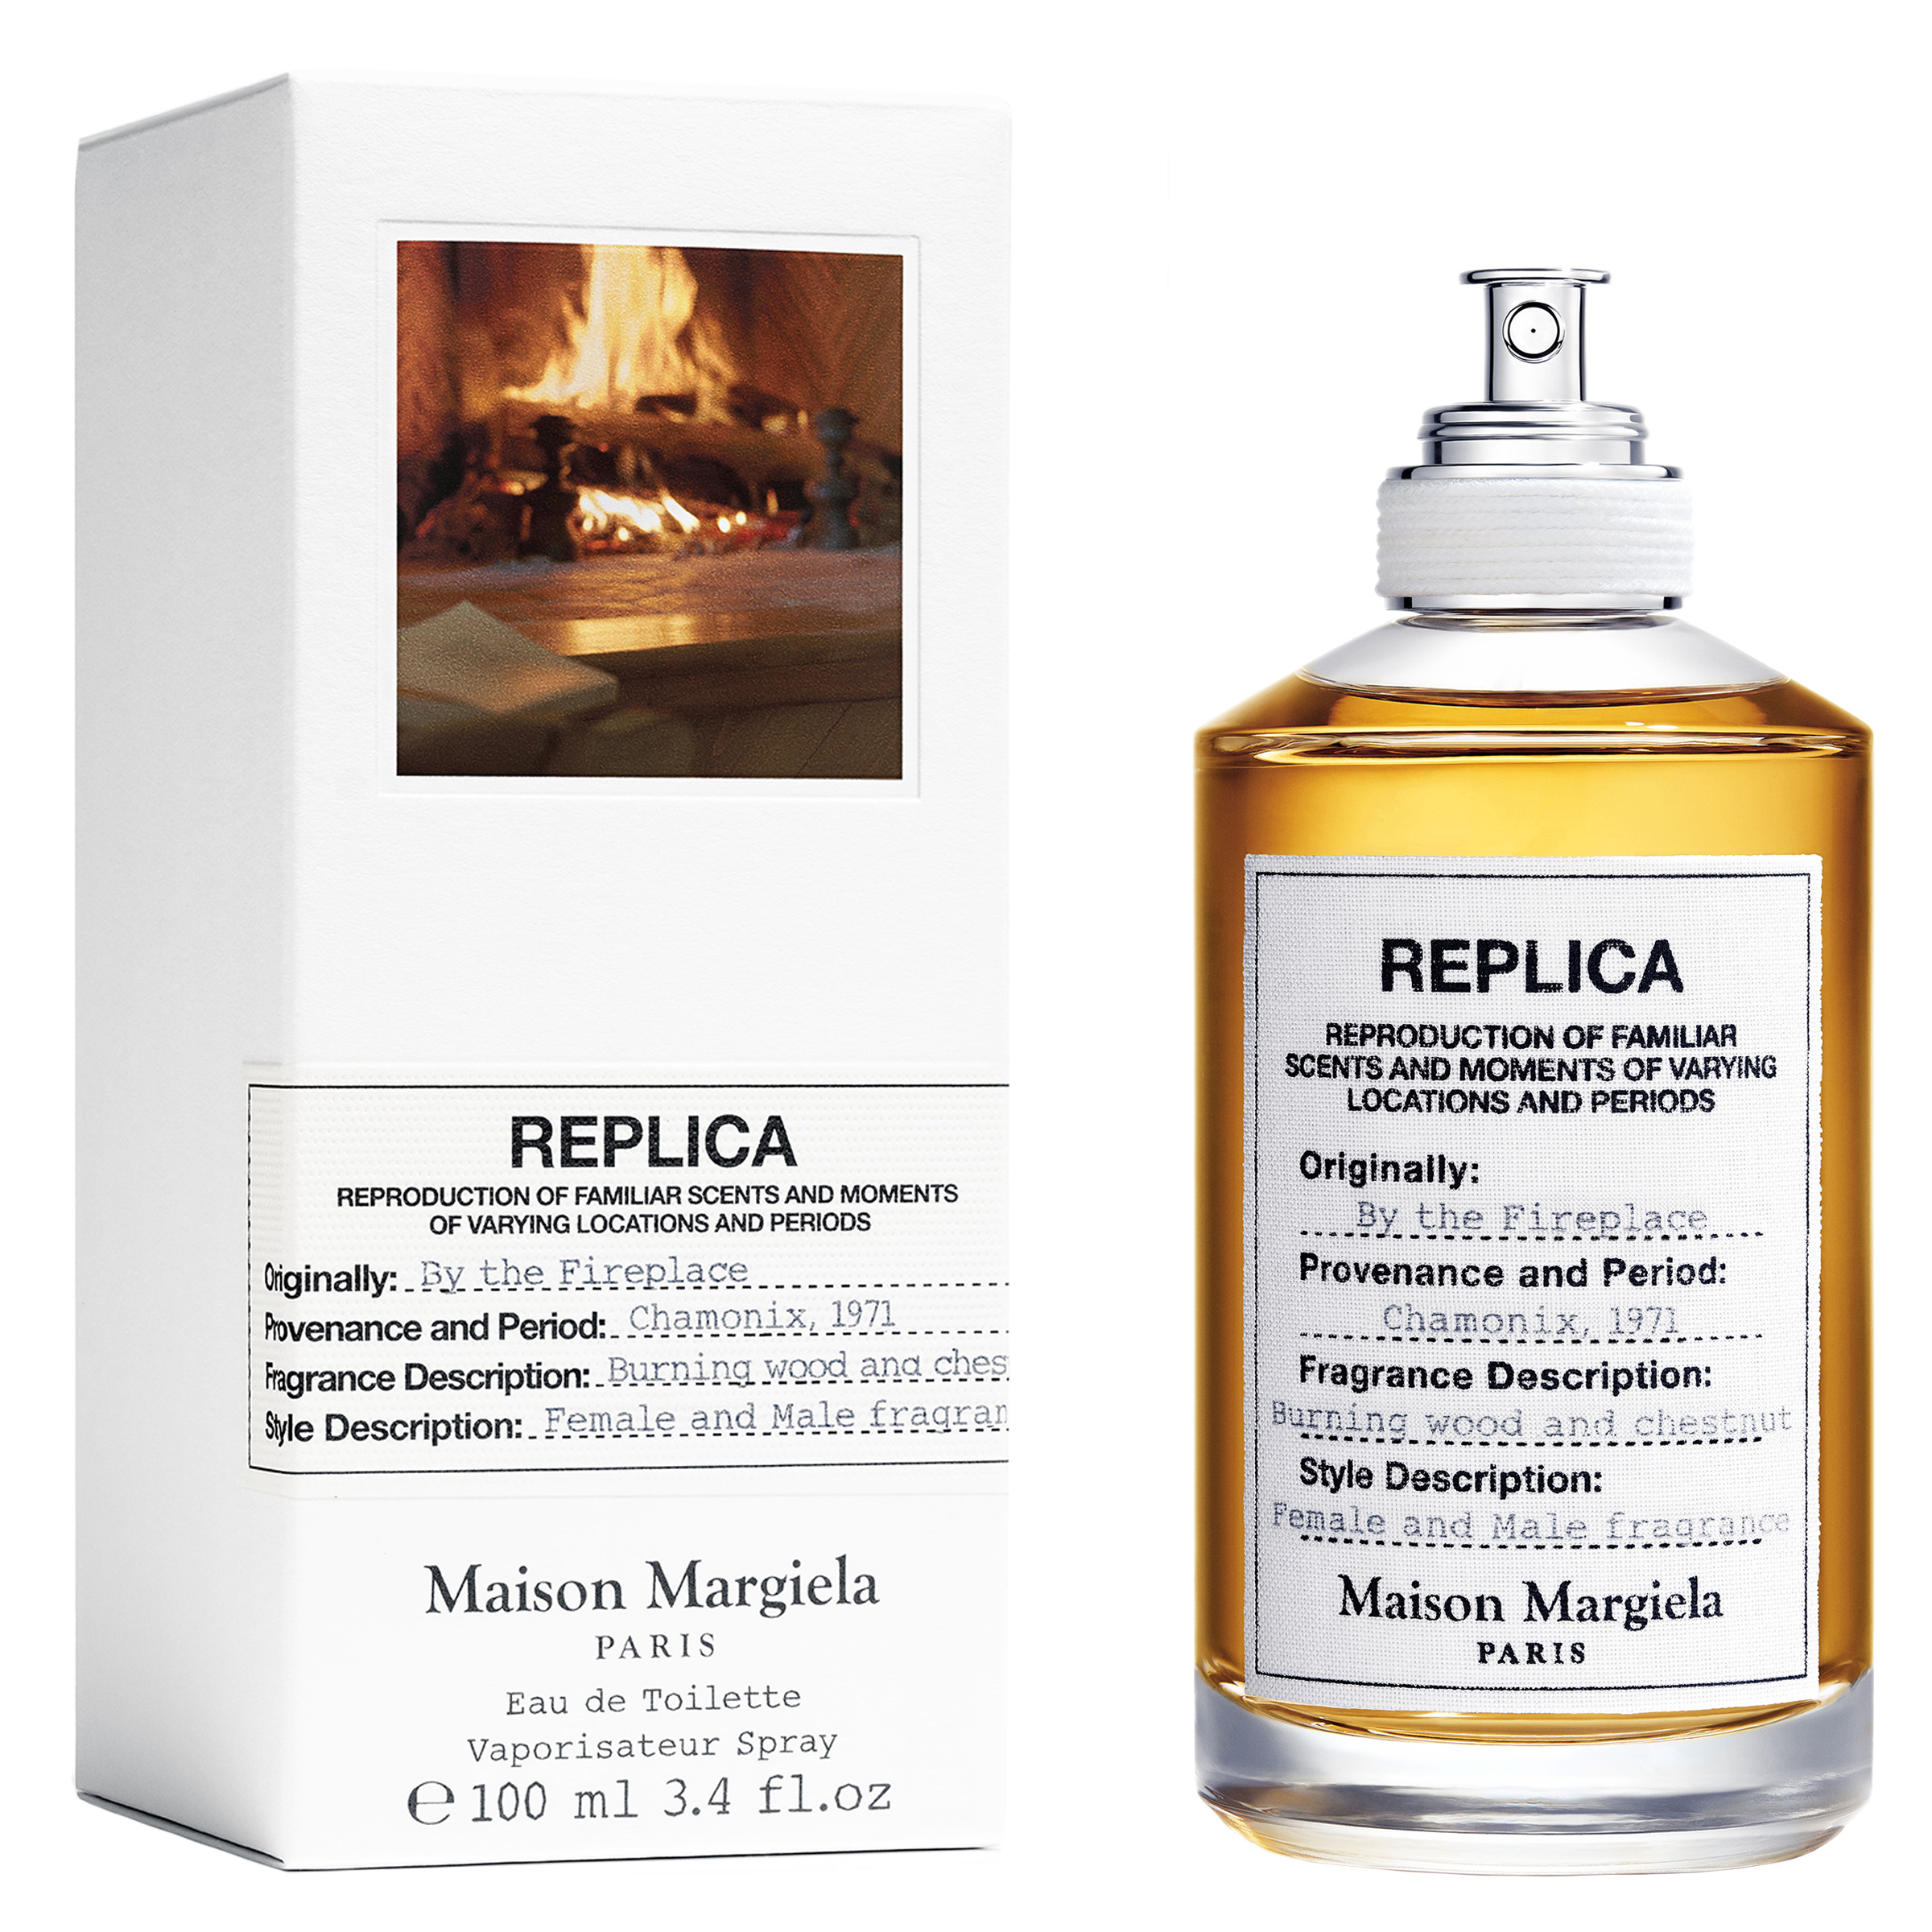 ≫ Replica Fragrance Review > Comprar, Precio y Opinión 2023